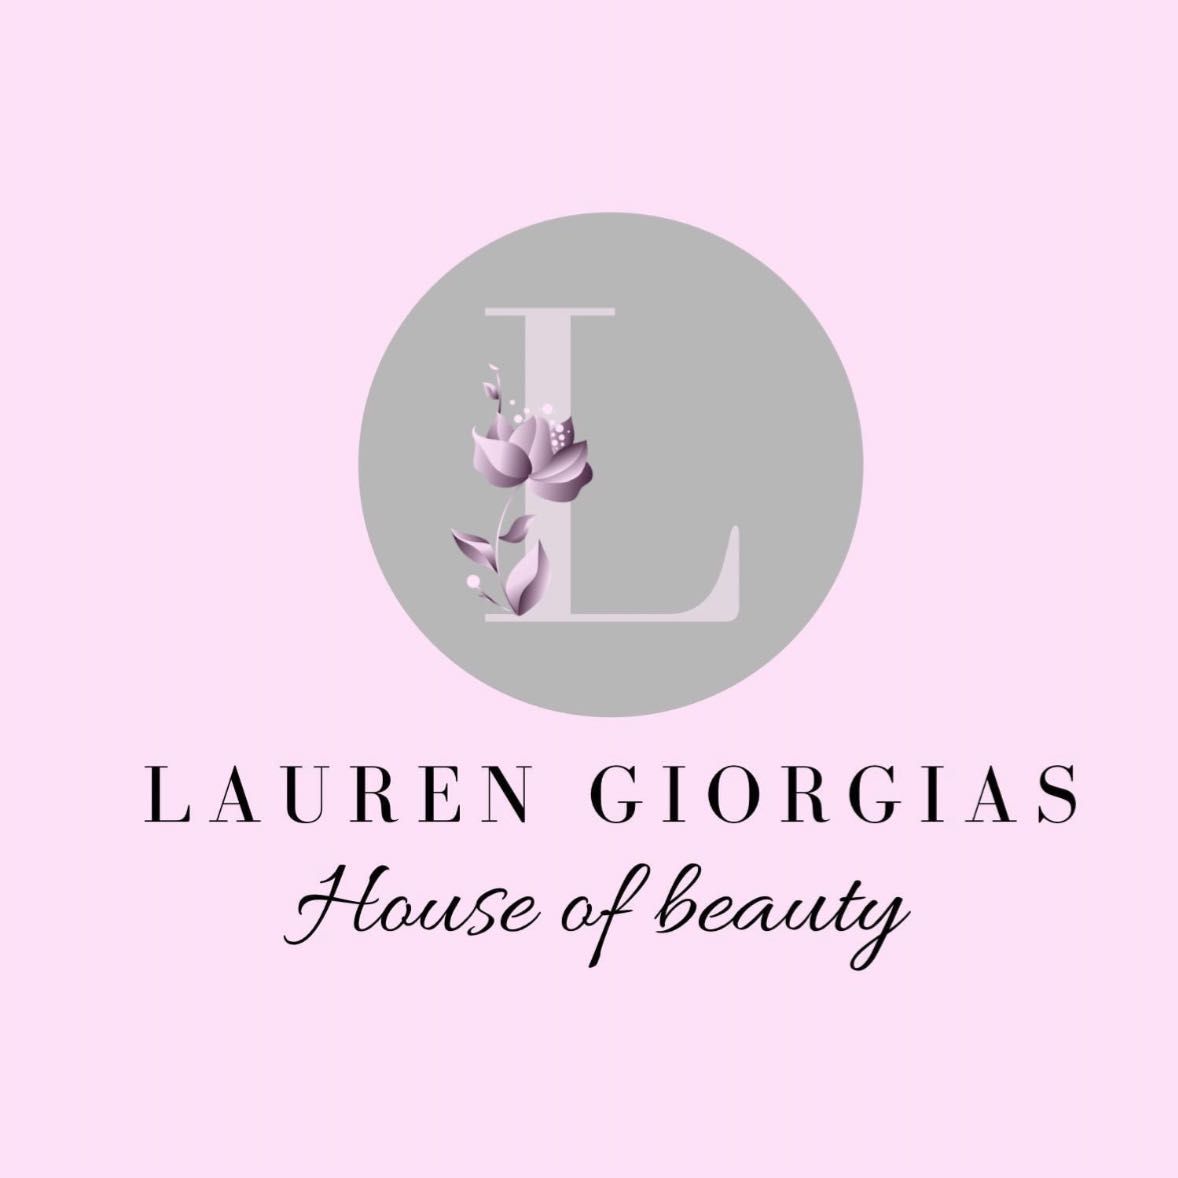 Lauren Giorgias House Of Beauty, 58a High Street, Measham, DE12 7HZ, Swadlincote